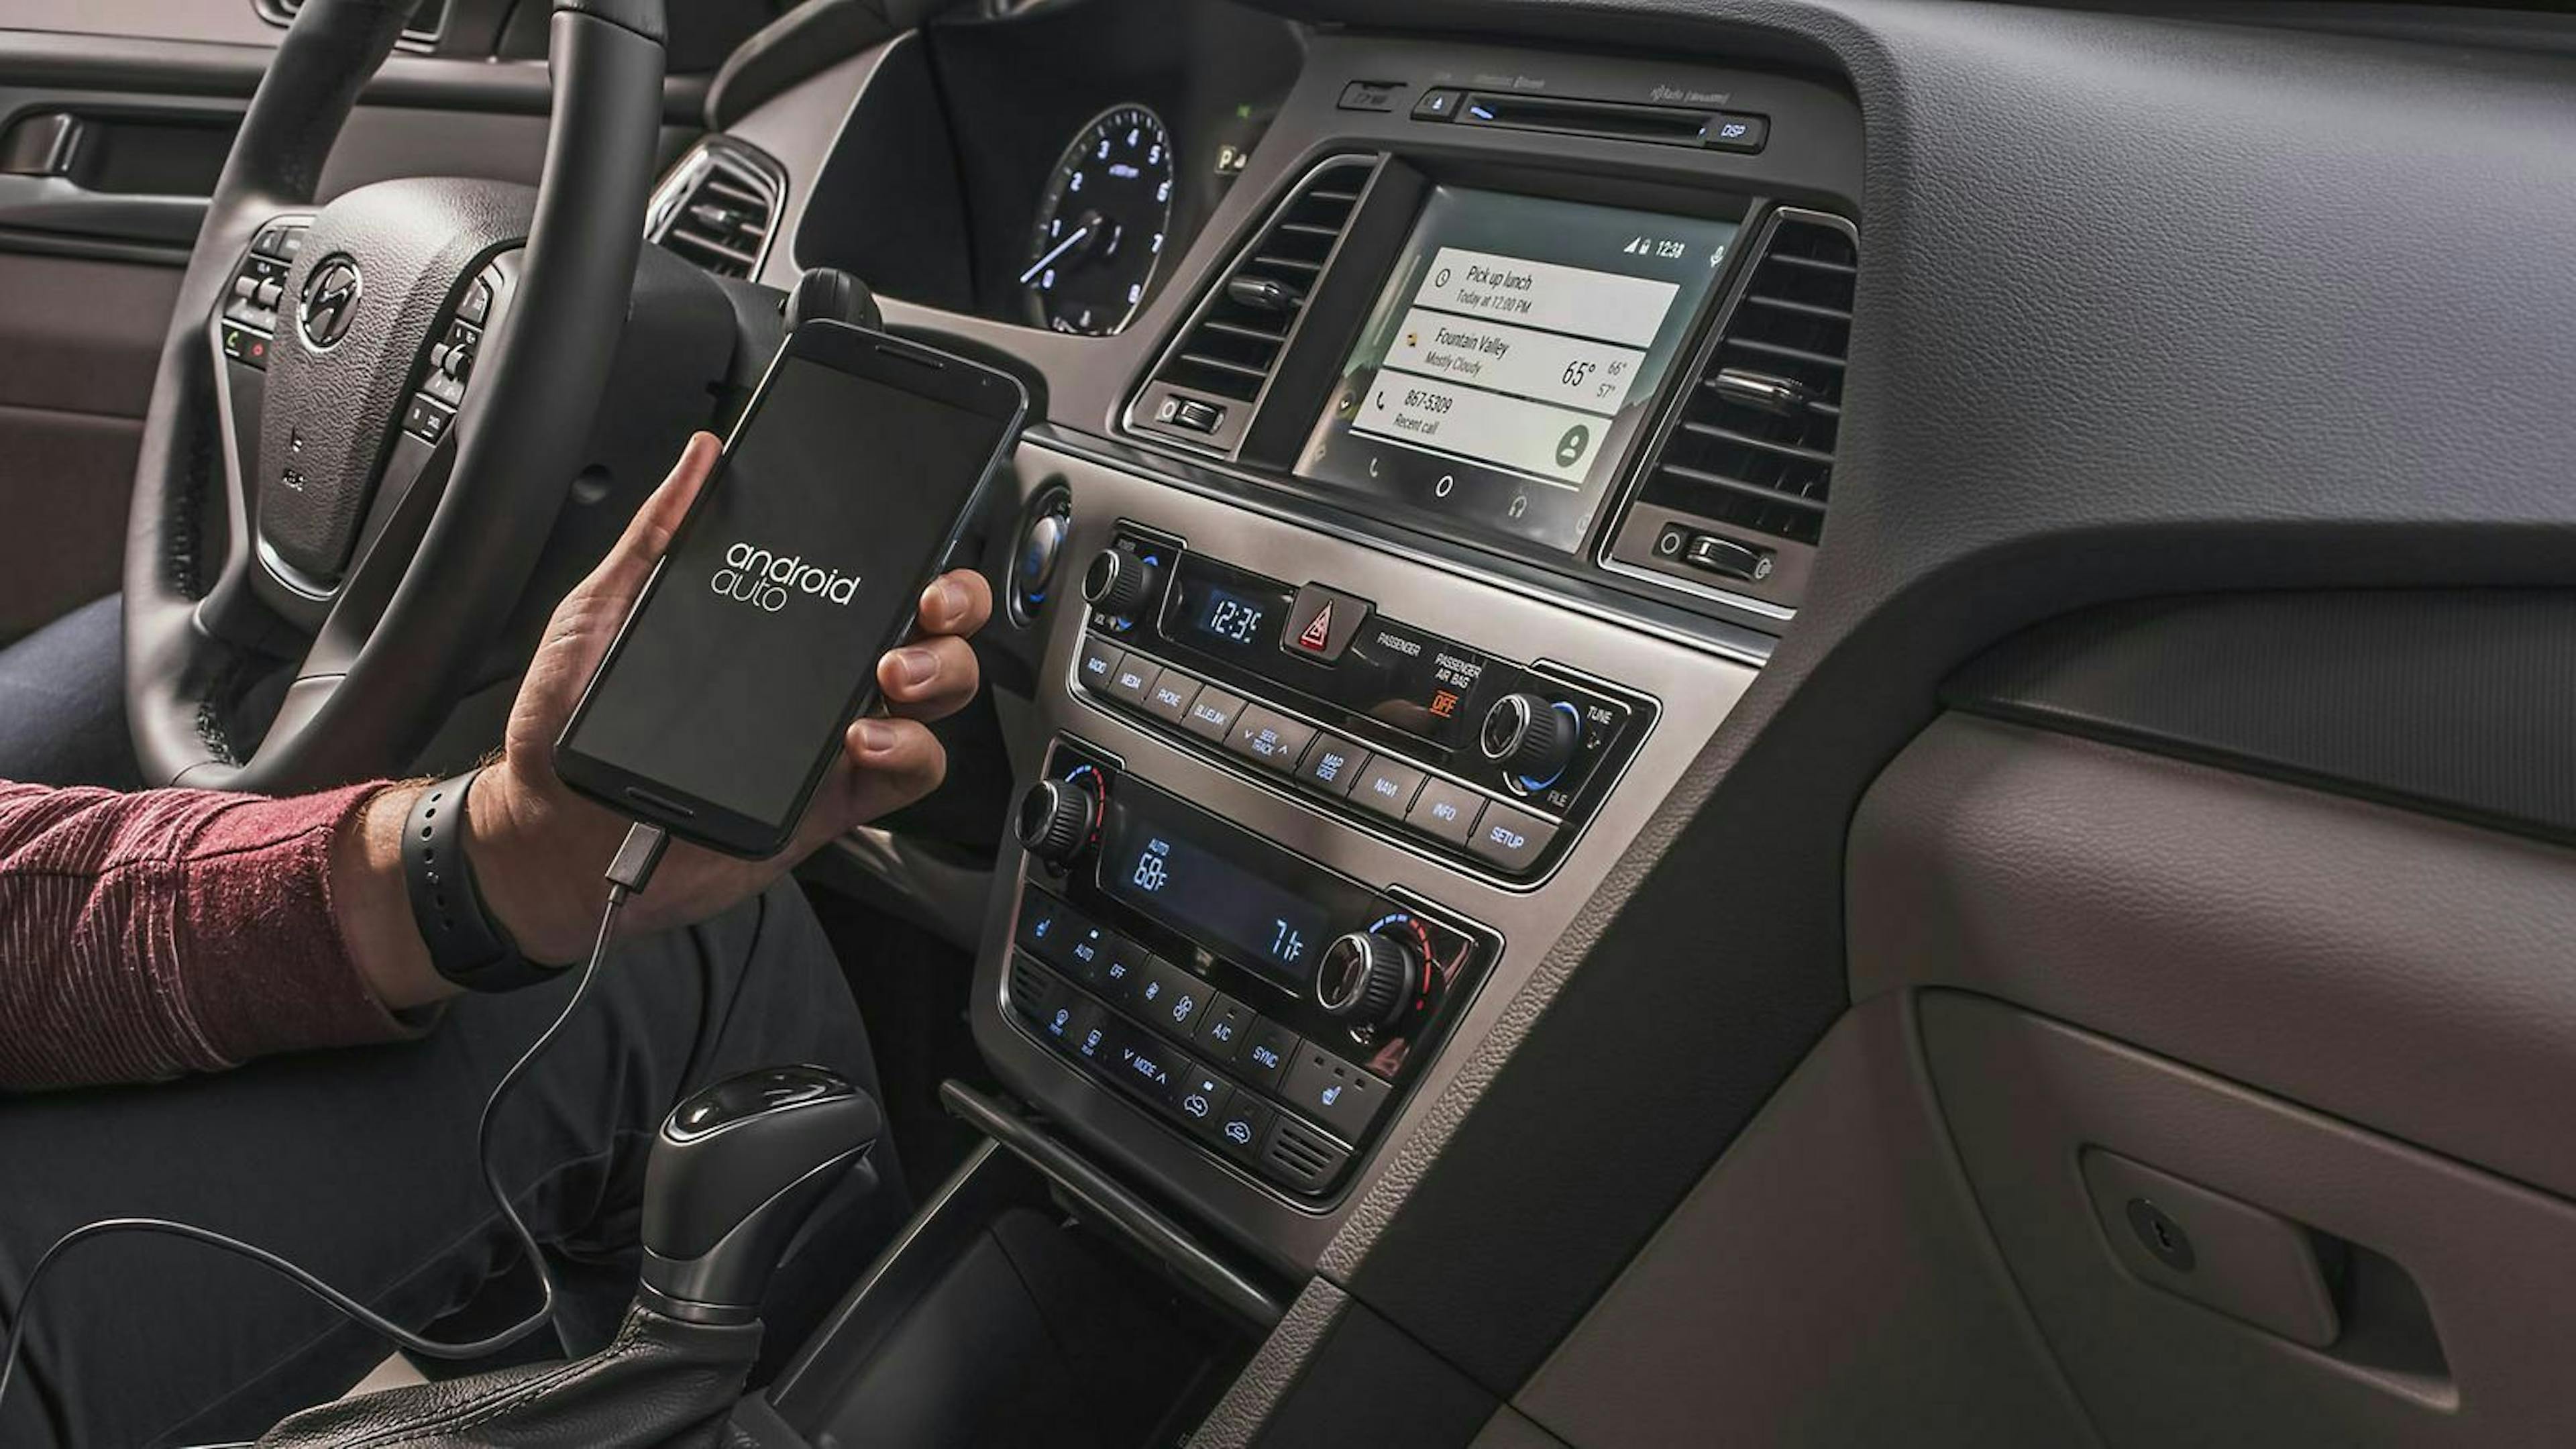 Zu sehen ist Cockpit eines Hyundai. Ein Android Telefon wurde durch Android Auto mit dem Infotainment verbunden